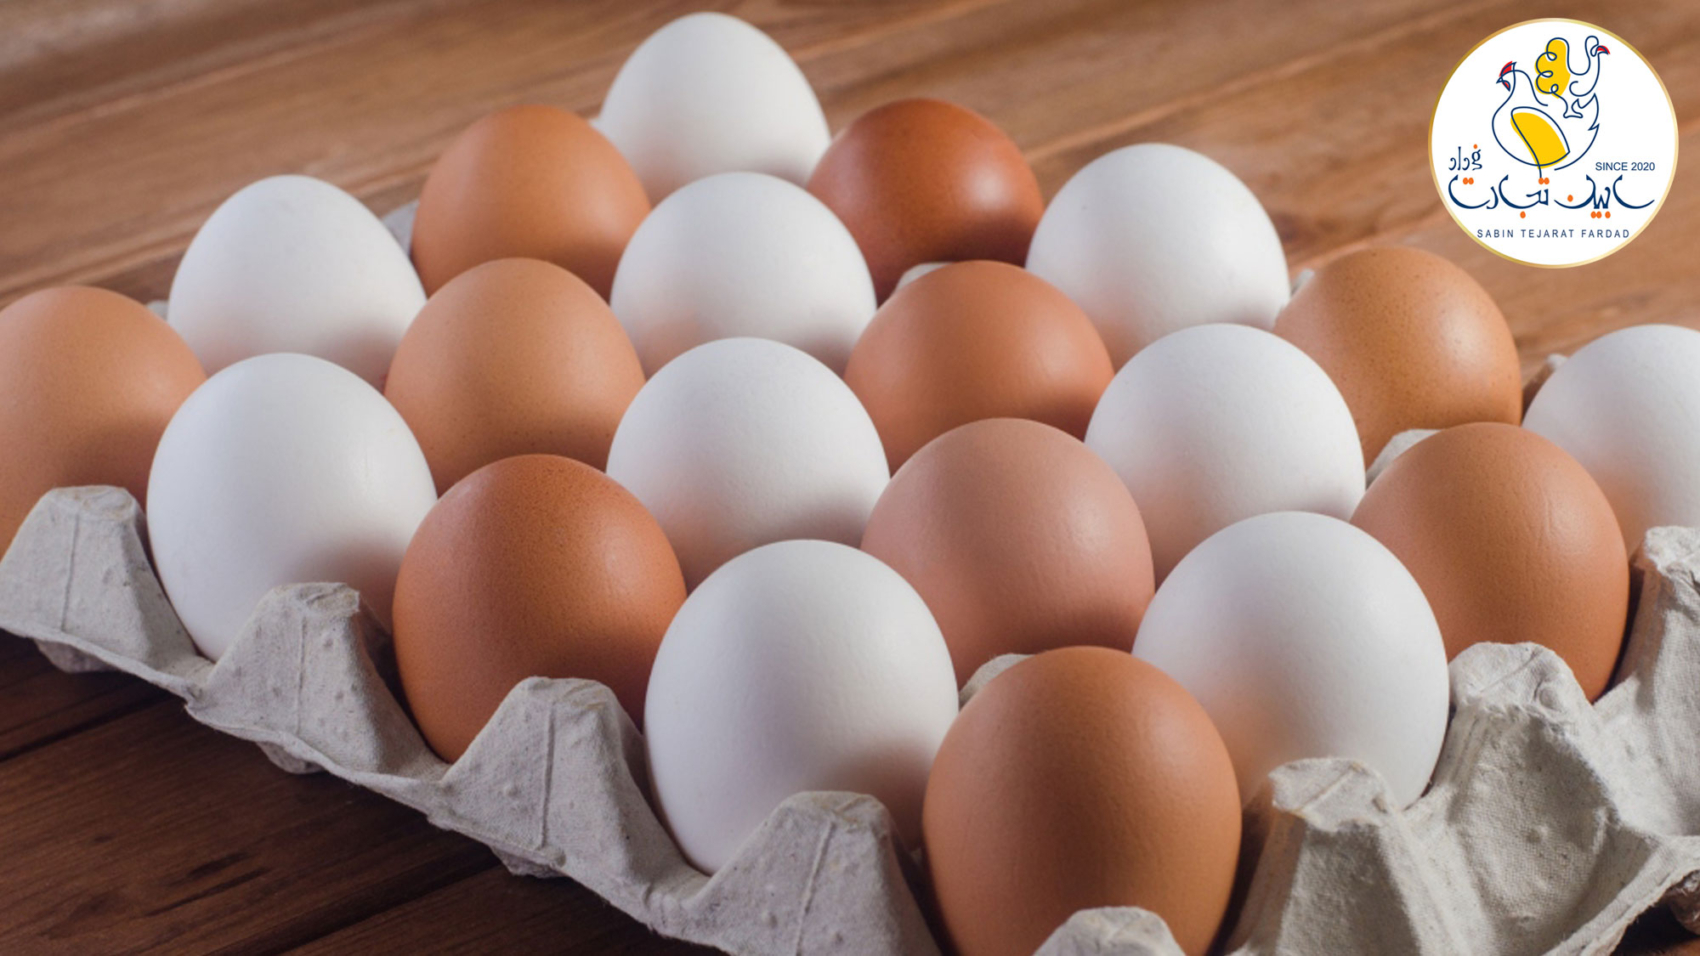 واردات تخم مرغ از کشور ترکیه لغو شد